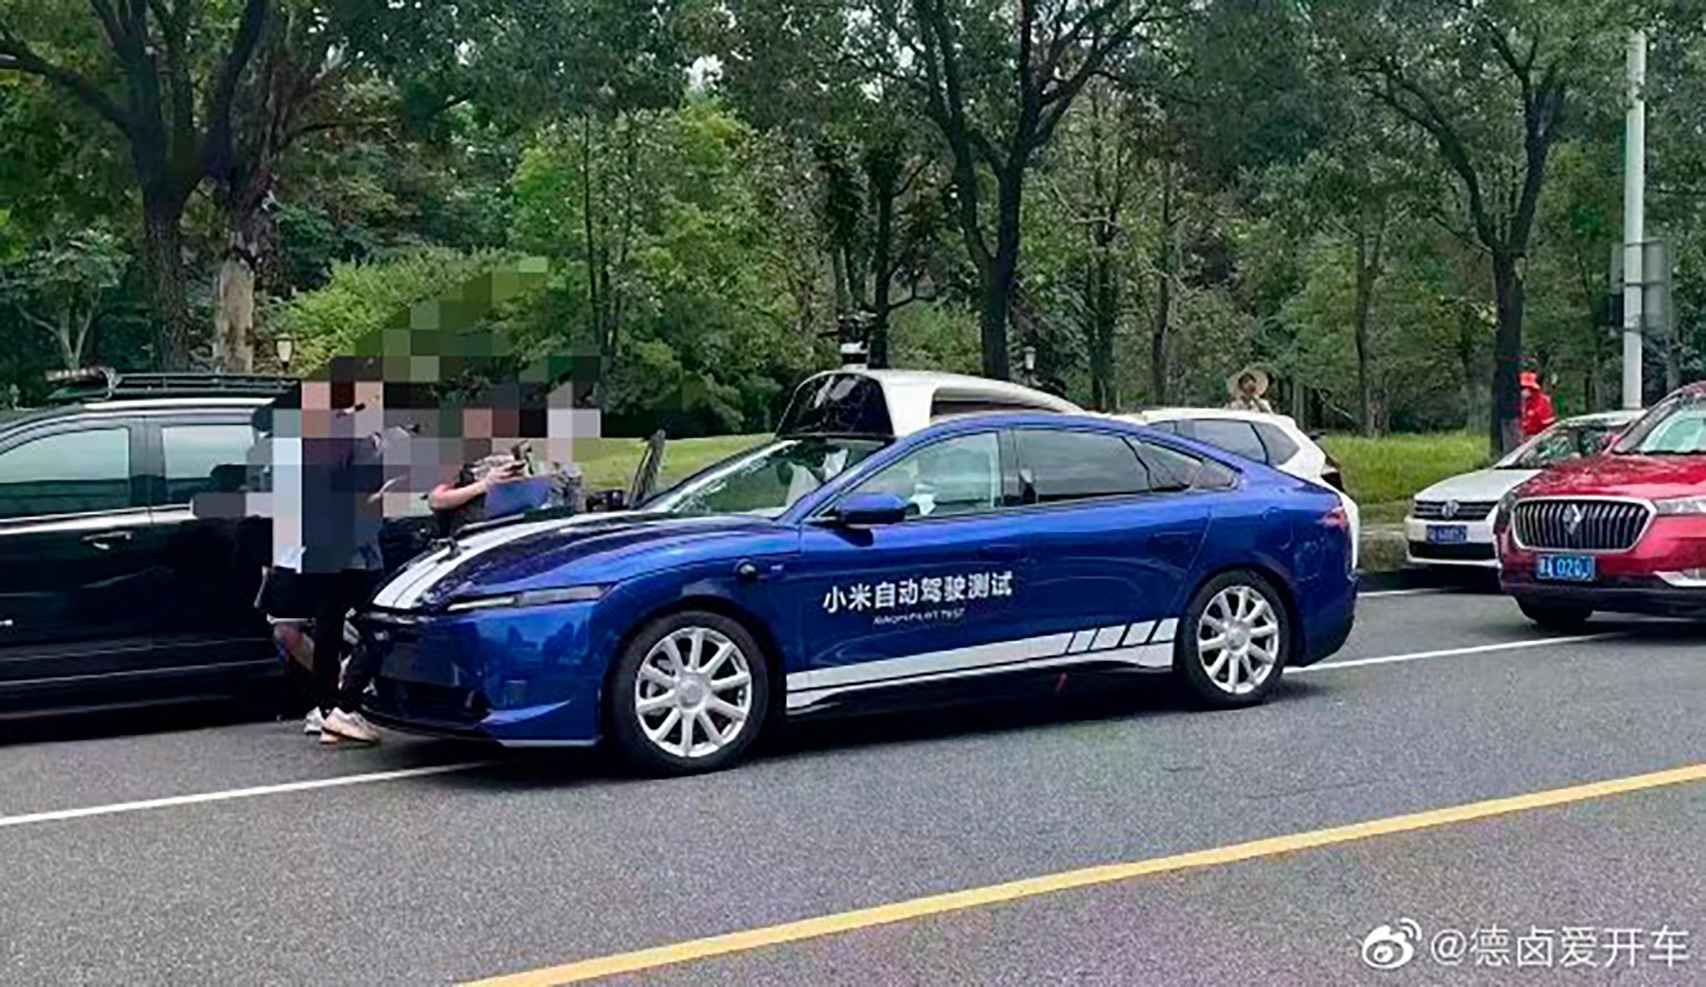 Este es el coche autónomo de Xiaomi en pruebas